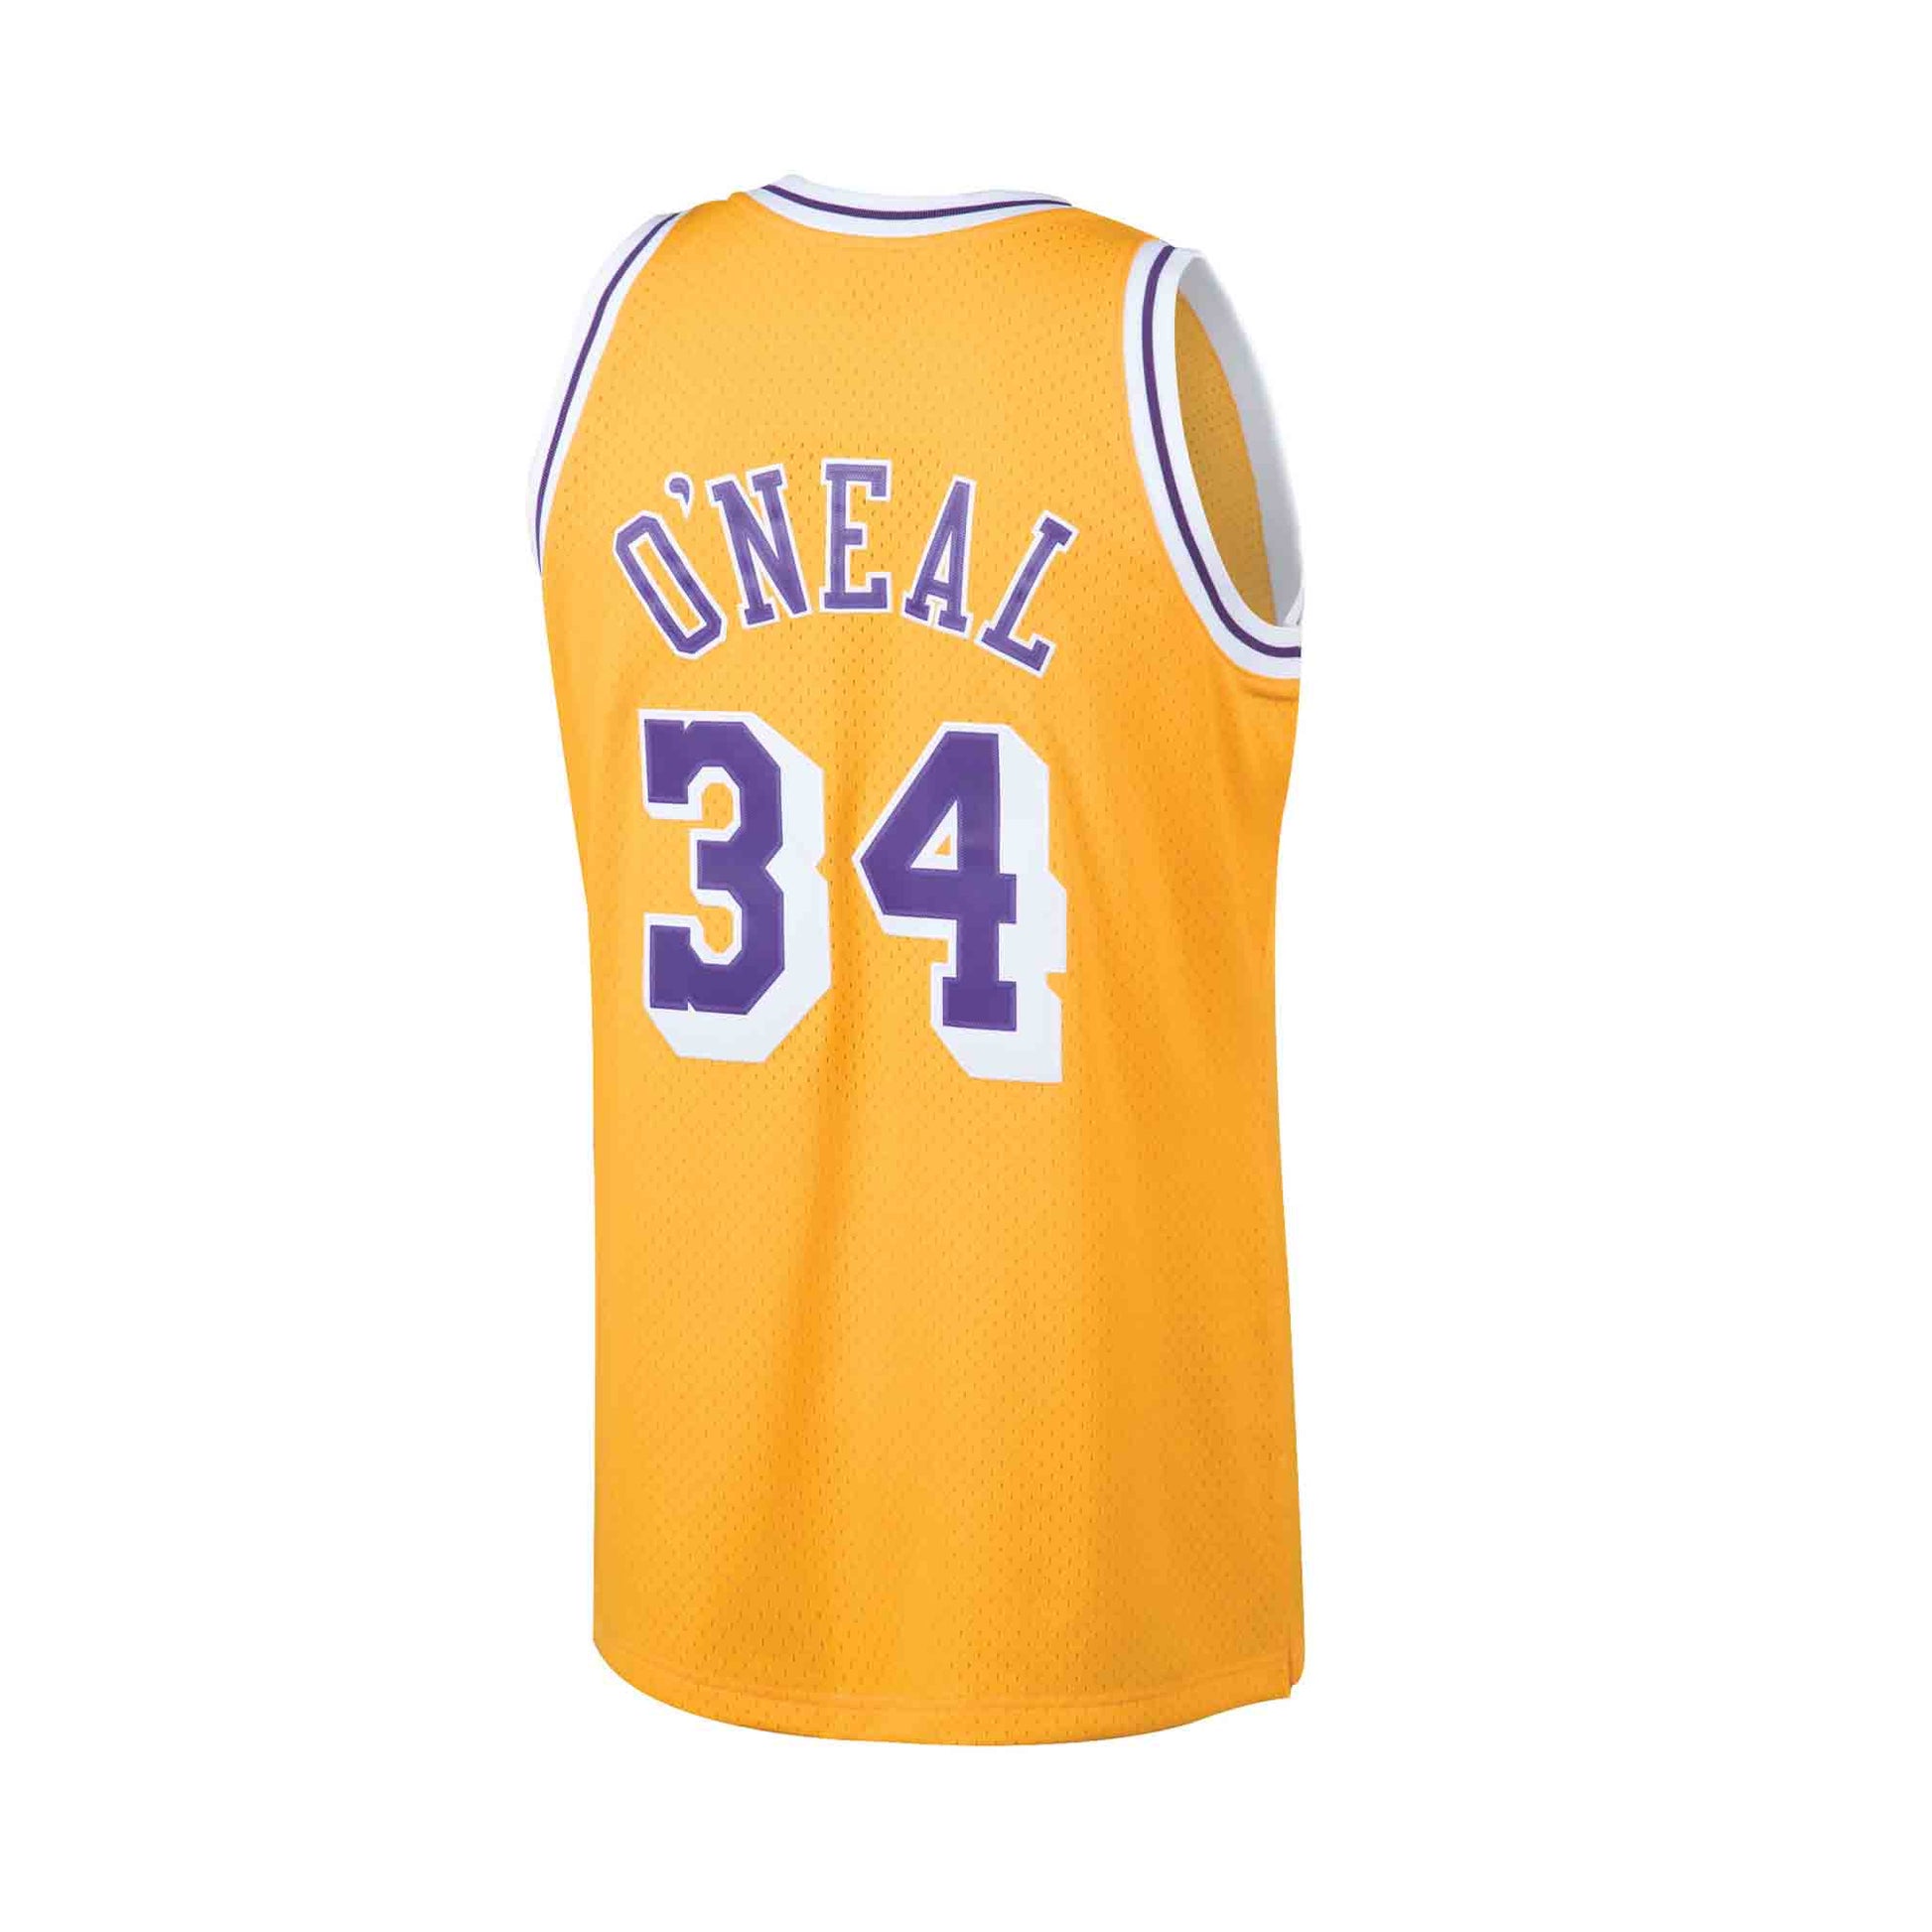 NBA Swingman Jersey Los Angeles Lakers 2009-10 Lamar Odom #7